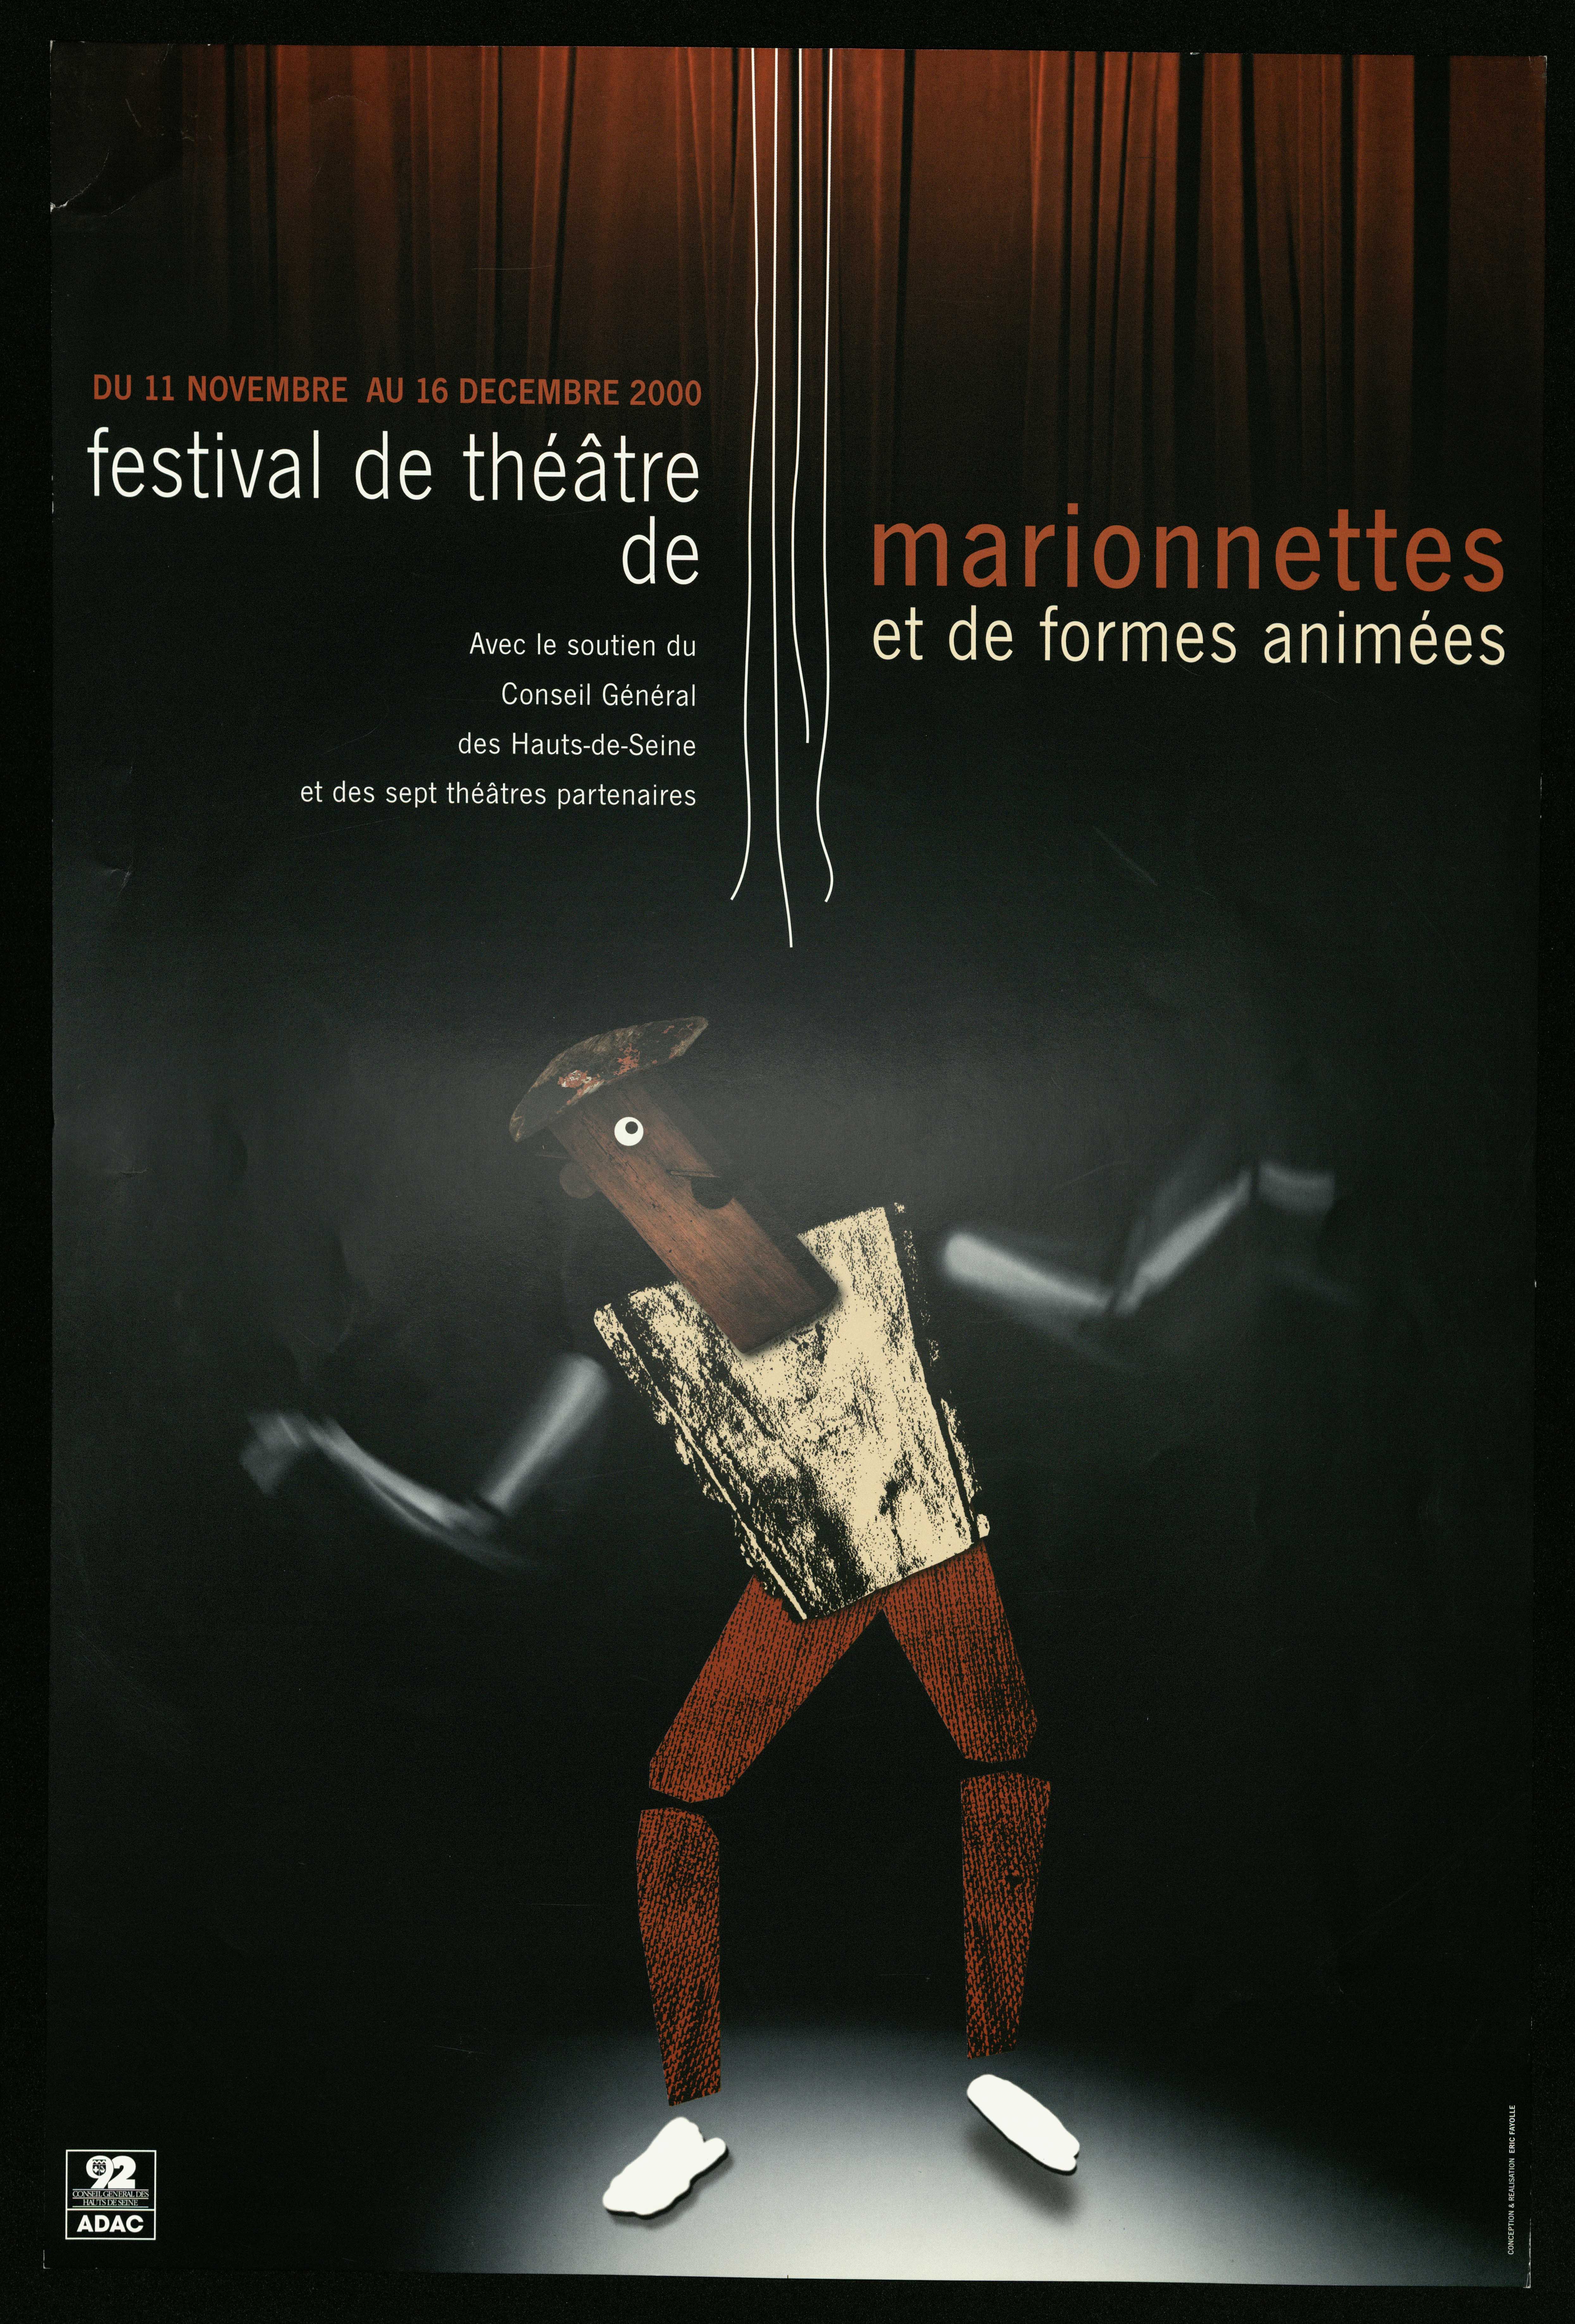 Du 11 novembre du  16 décembre 2000 festival de théâtre de marionnettes et de formes animées avec le soutien du conseil général des Hauts-de-Seine et de sept théâtres partenaires/Eric Fayolle. - CG 92  ADAC, 2000. - 1 affiche ill.coul., 60 x 40 cm.